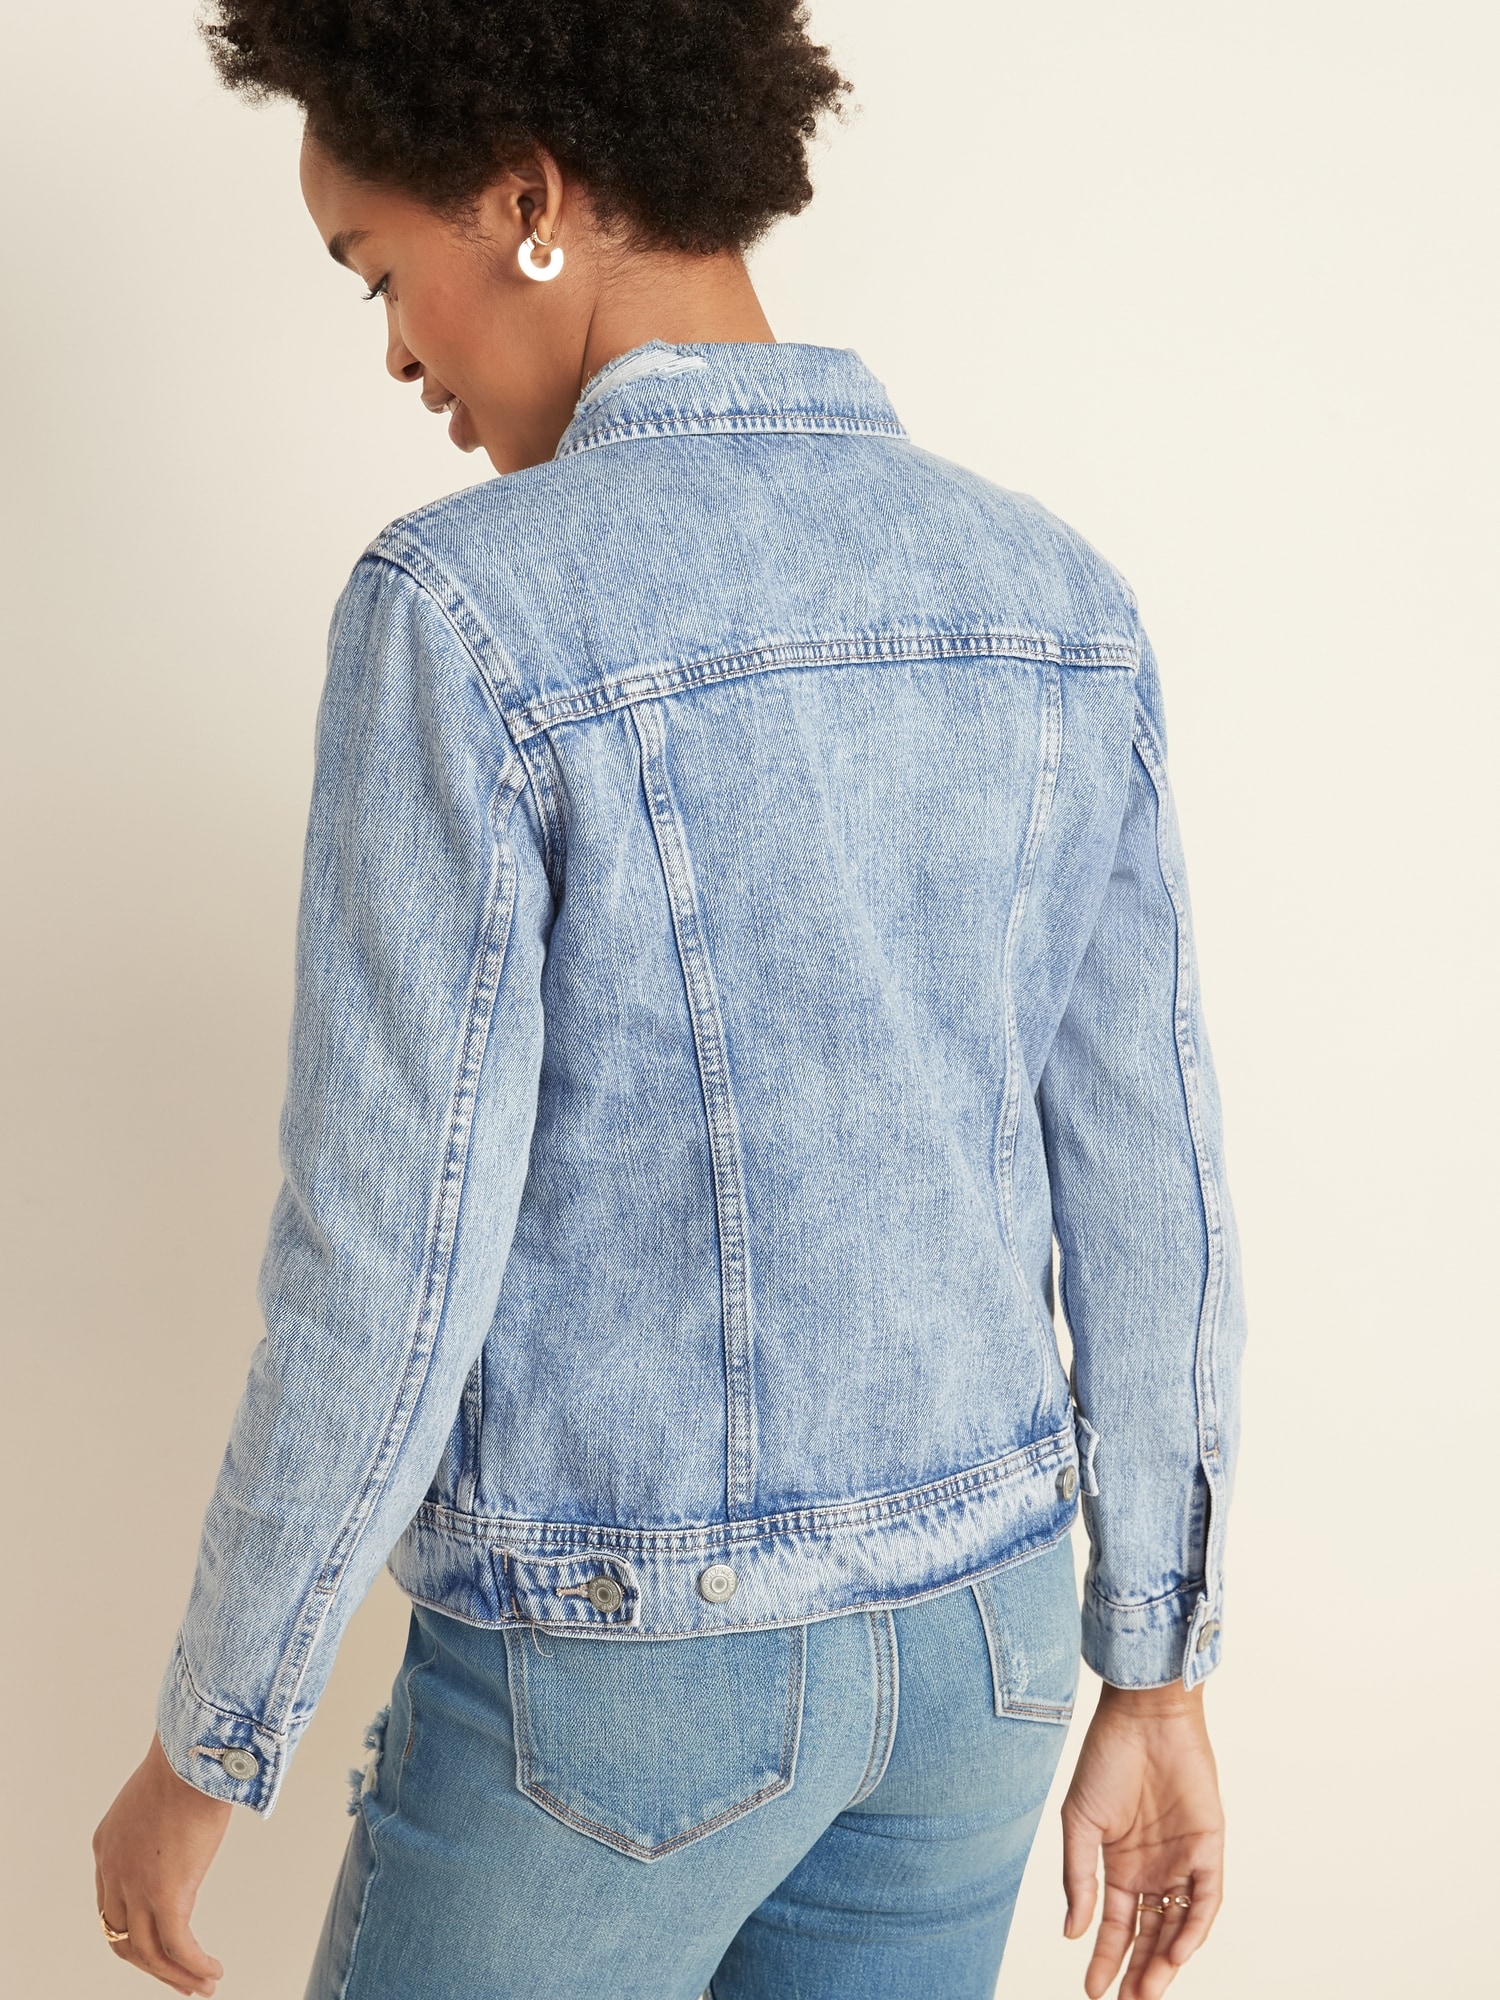 blue jean distressed jacket